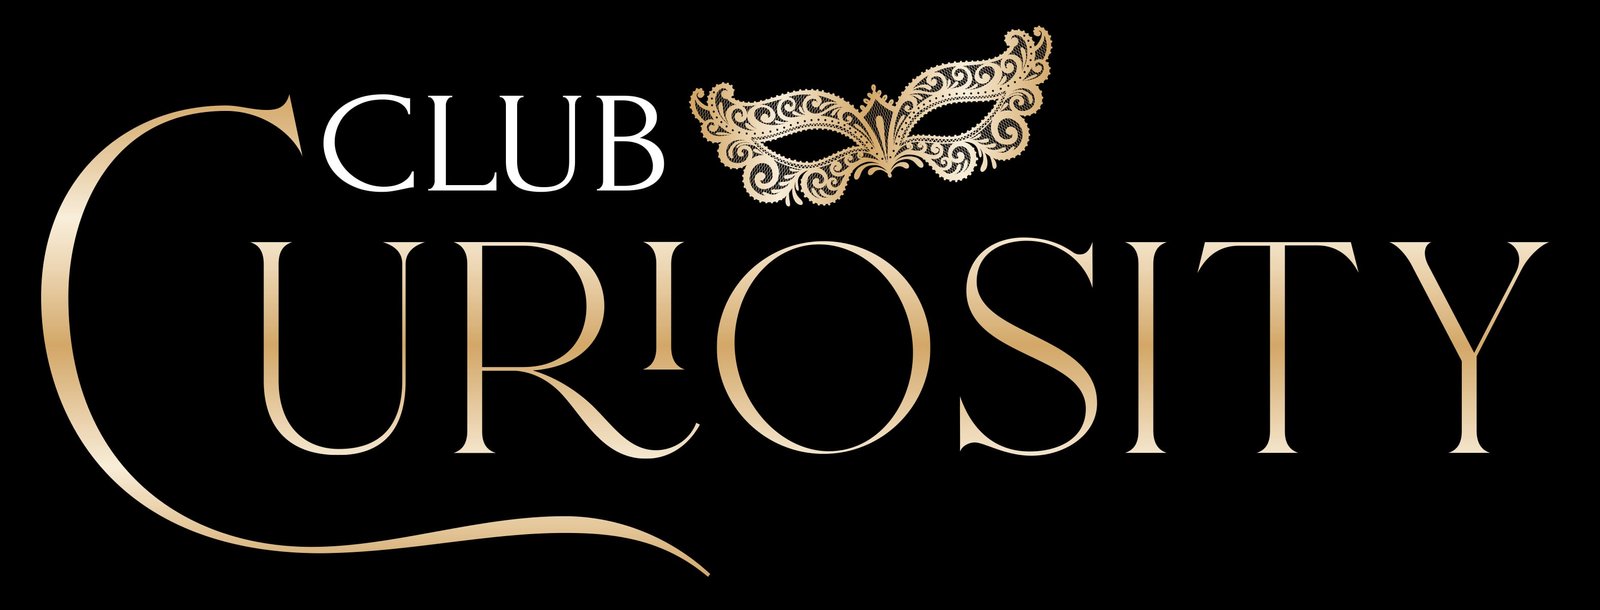 Club Curiosity Parties | NYC • Chicago • Privé